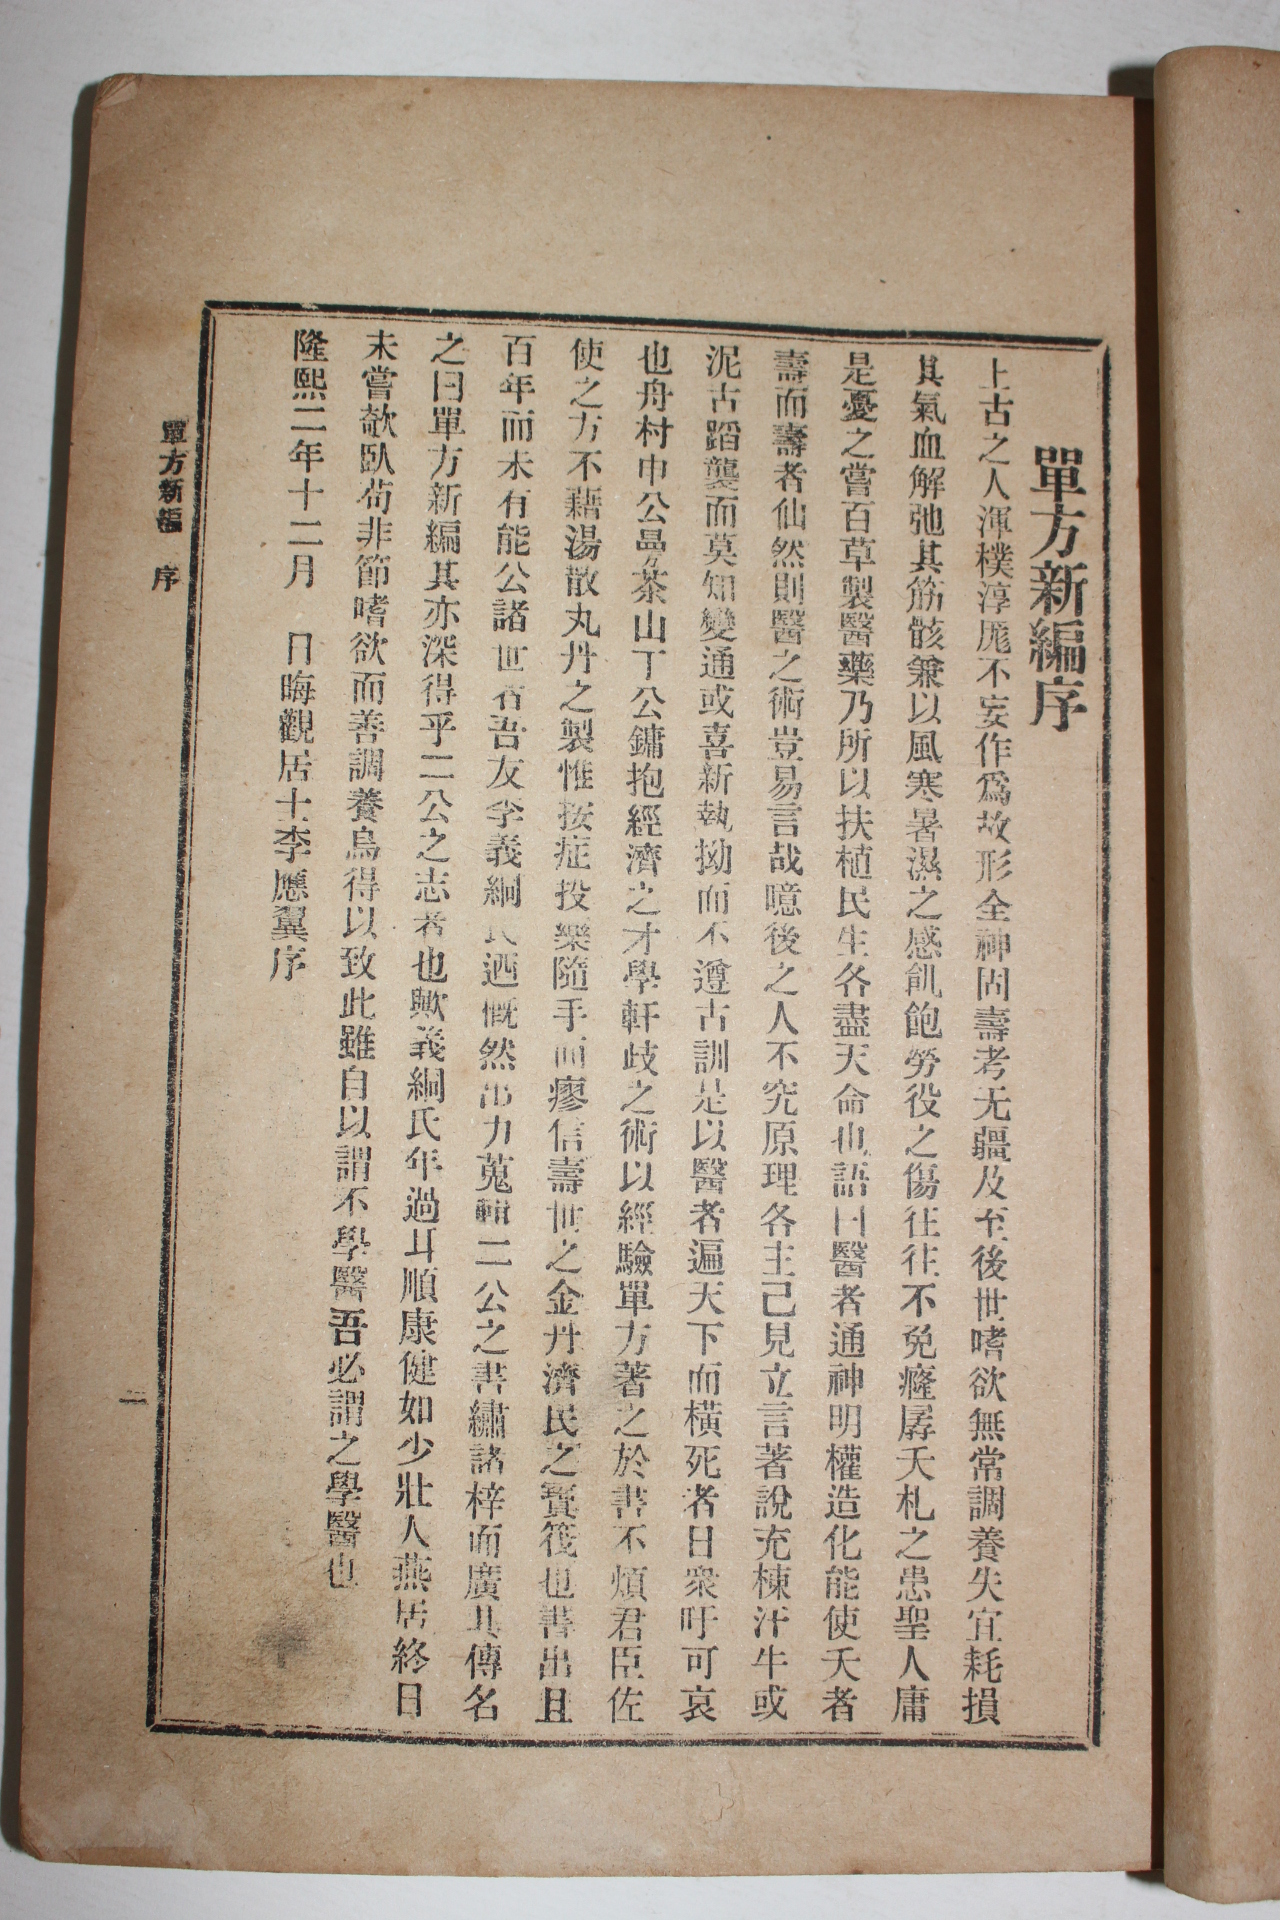 1909년(융희3년)초판 다산정약용(丁若鏞)의서 단방신편(單方新編)1책완질